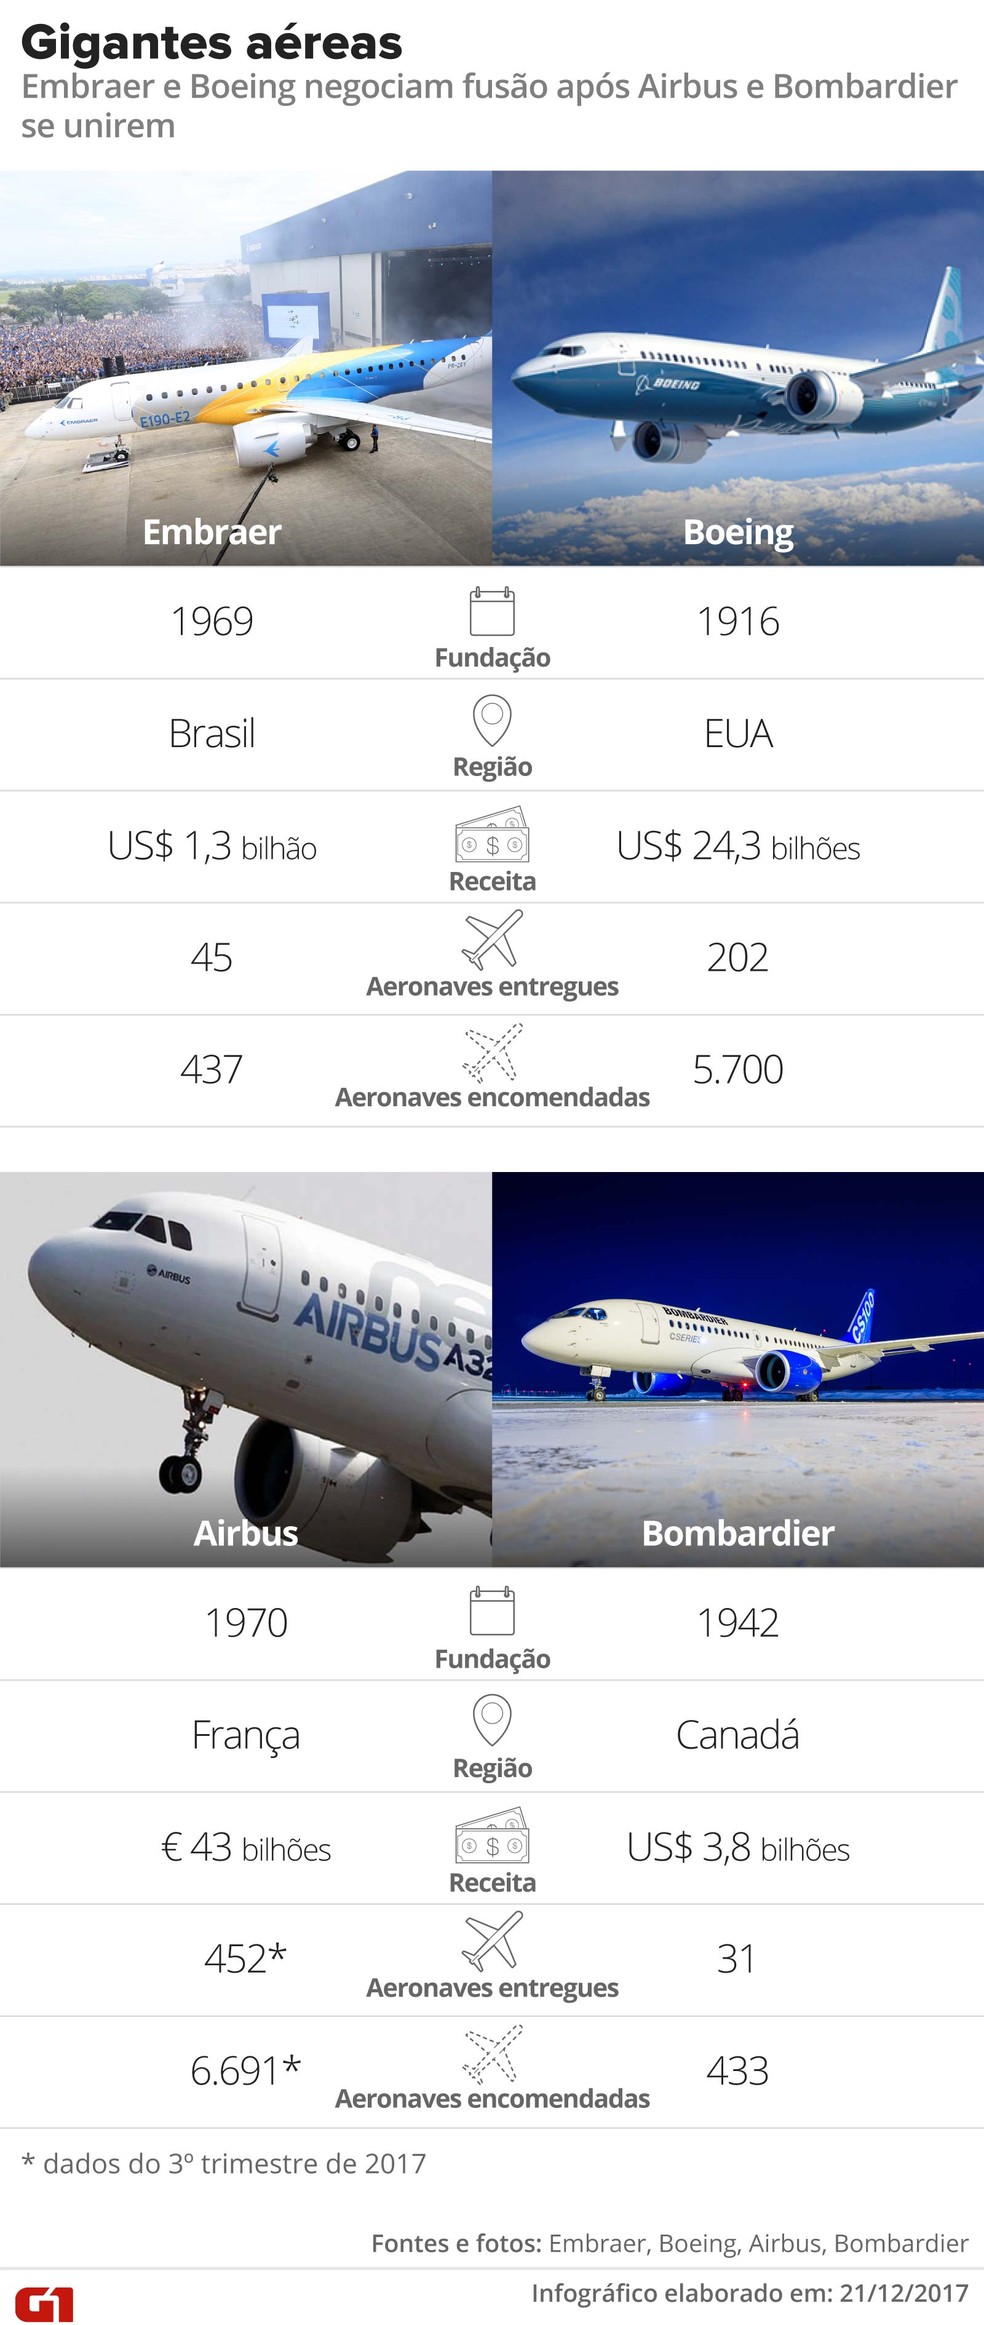  Situação das gigantes aéreas Embraer, Boeing, Airbus e Bombardier (Foto: Infográfico/Alexandre Mauro)